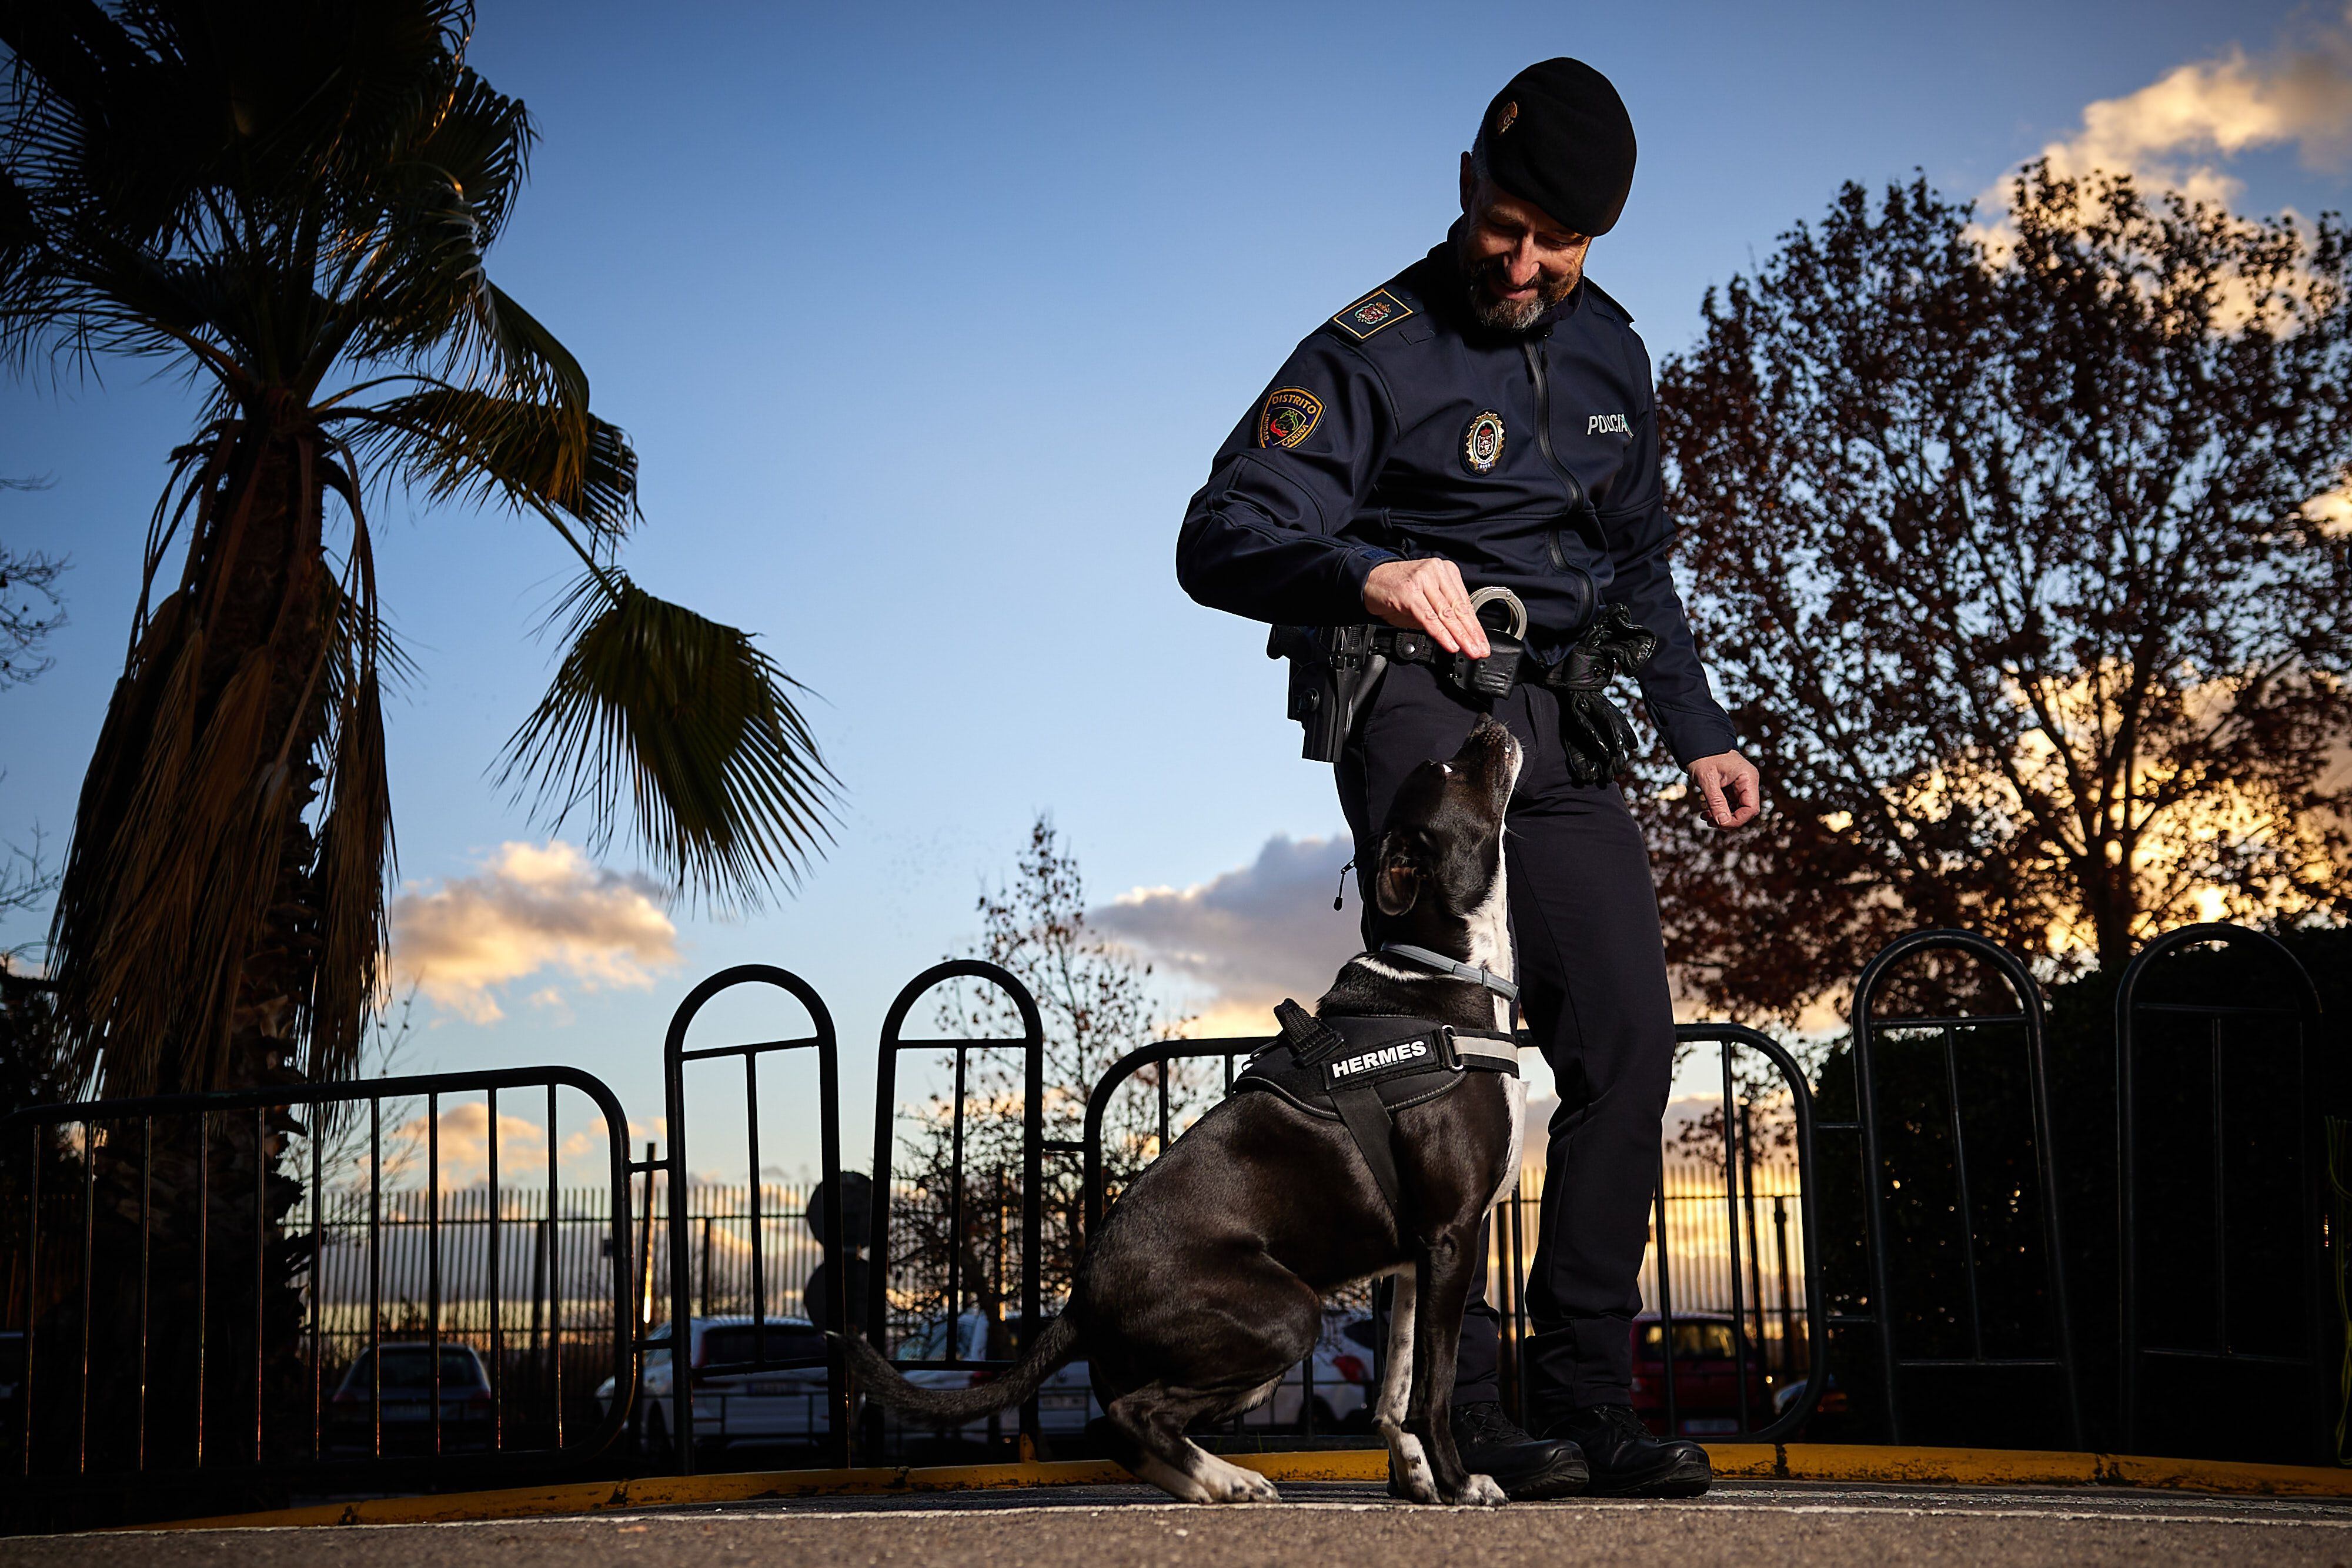 El perro Policía Hermes, obedece a su dueño y compañero, el agente Antonio Ordoñez de la Unidad canina de la Policía Local de Granada.